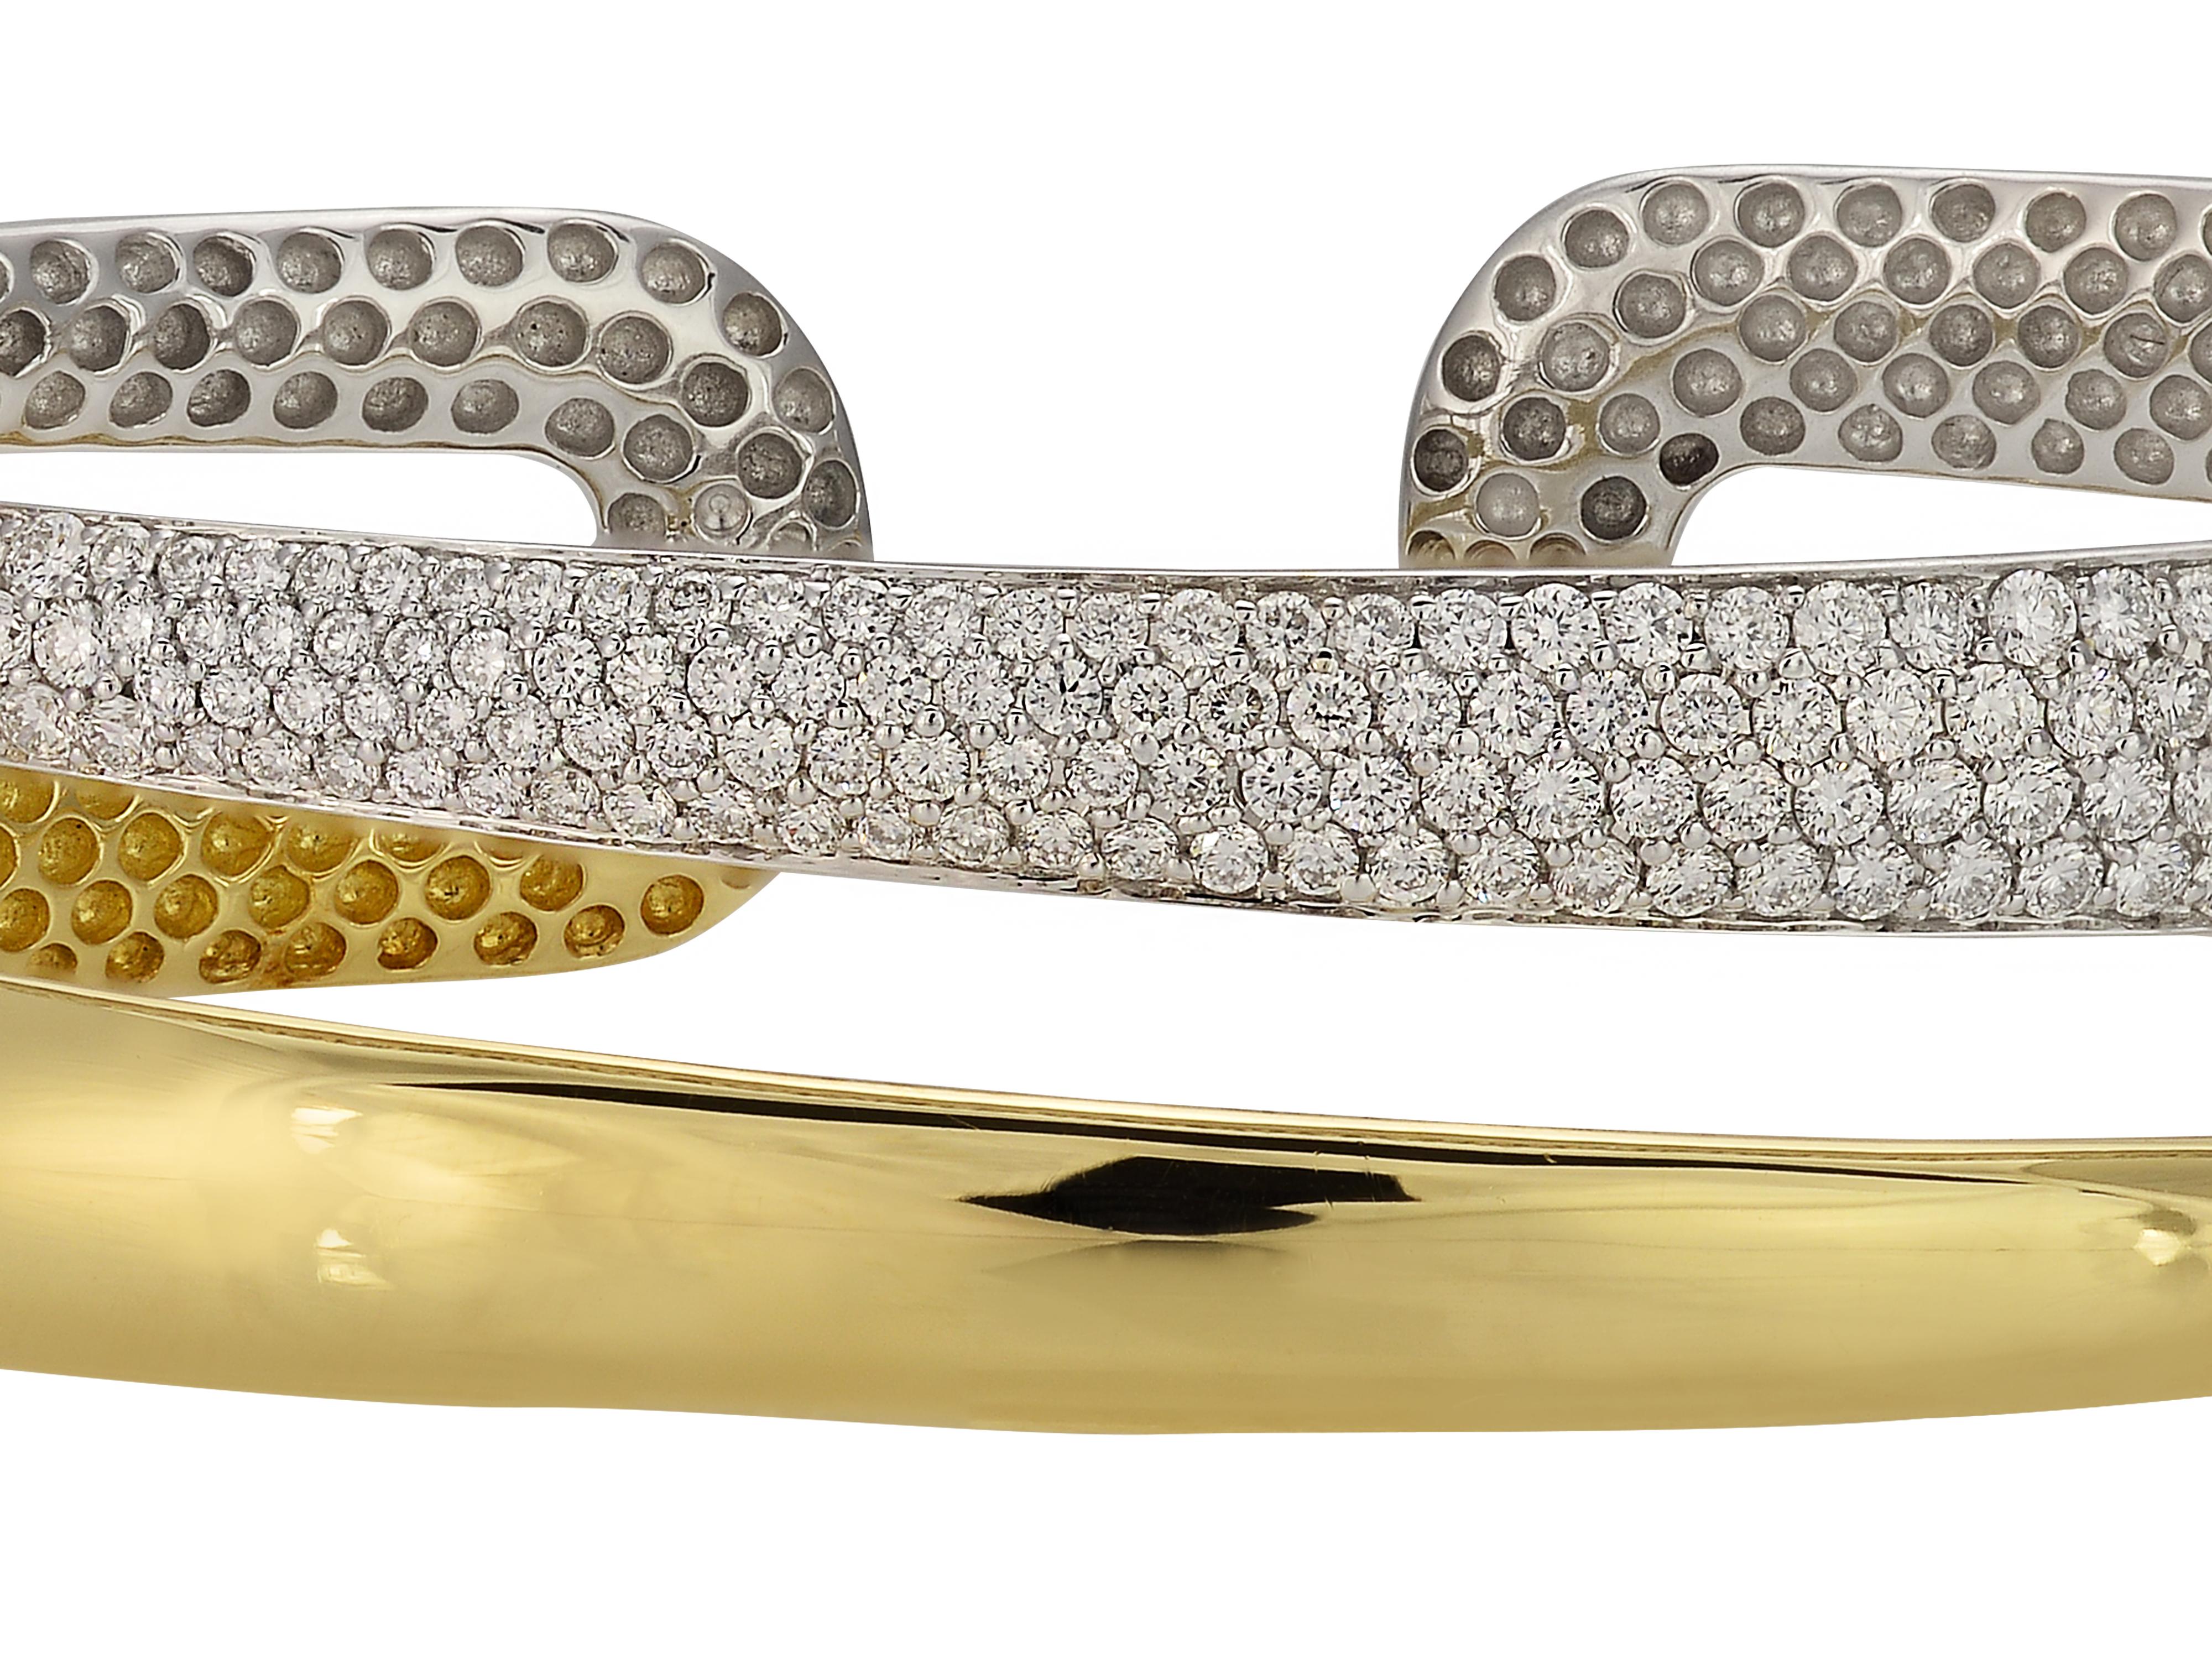 Manschettenarmband mit Scharnier aus 18 Karat Weiß- und Gelbgold mit Diamanten aus der Collection'S Roberto Coin Scalare. Das Design des Armbands erweckt in der Draufsicht die Illusion von zwei gestapelten Armbändern. Das pflastergeschmückte Armband